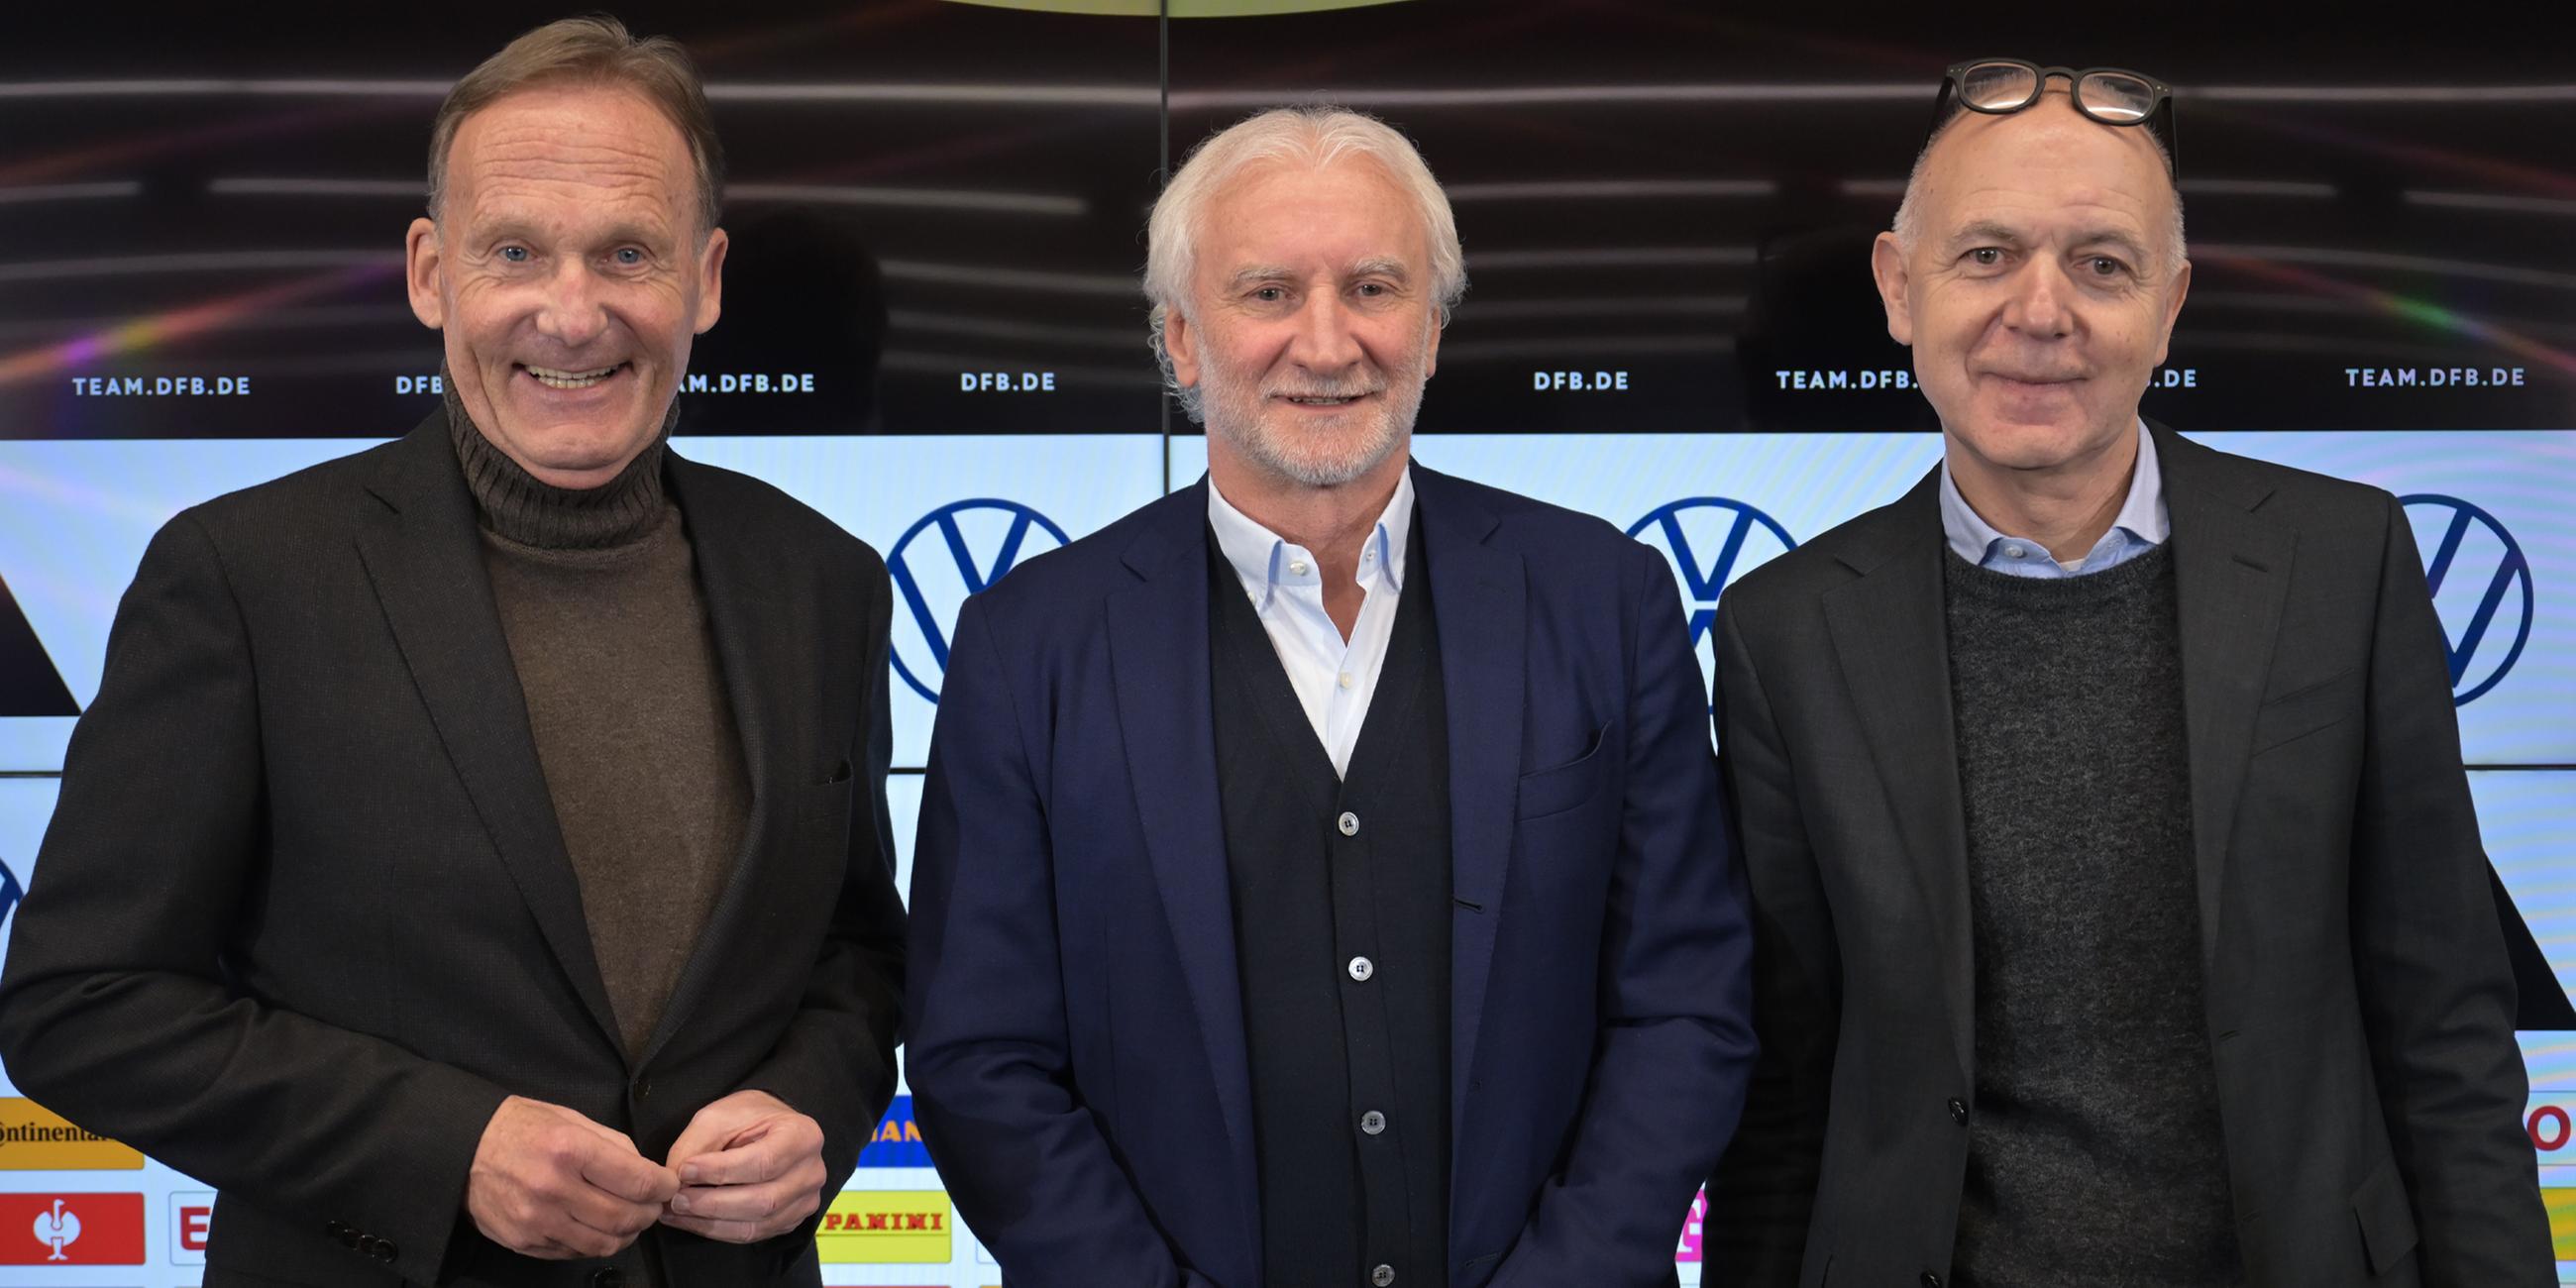 1. DFB-Vizepräsident Hans-Joachim Watzke, Rudi Völler, neuer Sportdirektor der Fußball-Nationalmannschaft der Männer und DFB-Präsident Bernd Neuendorf stehen zusammen. (20.01.2023)